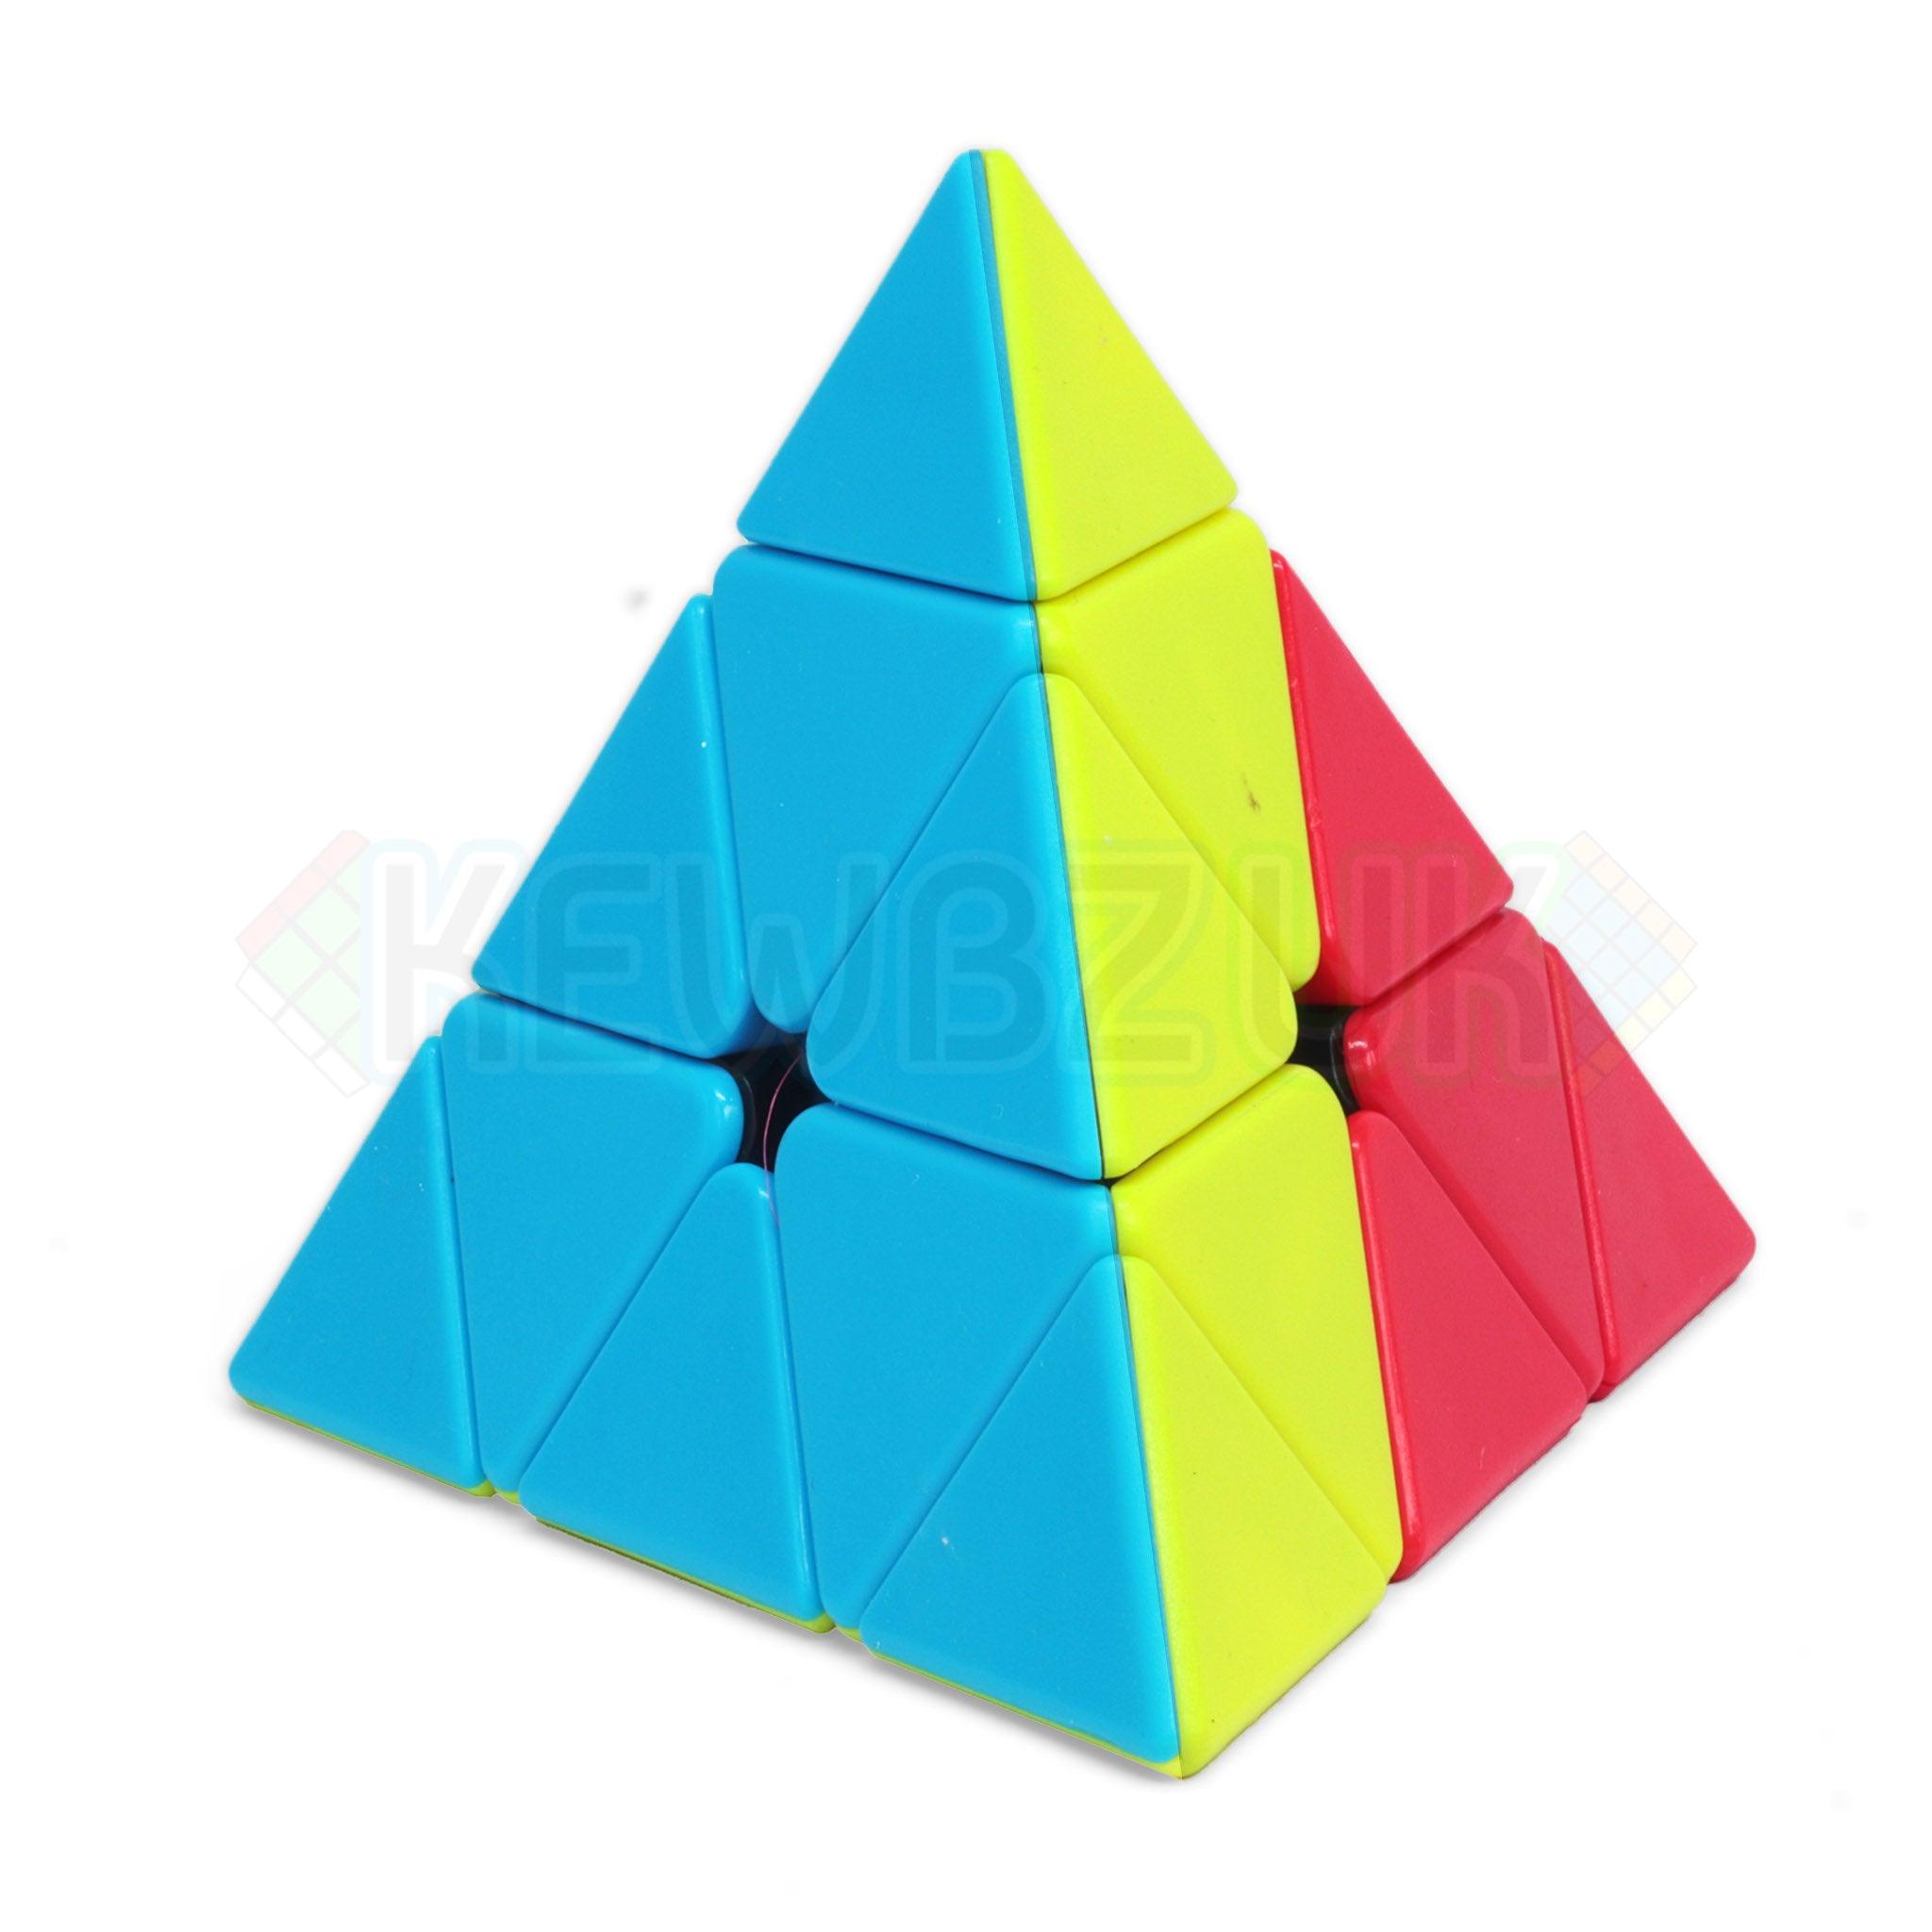 LeFun 3-Colour Pyraminx